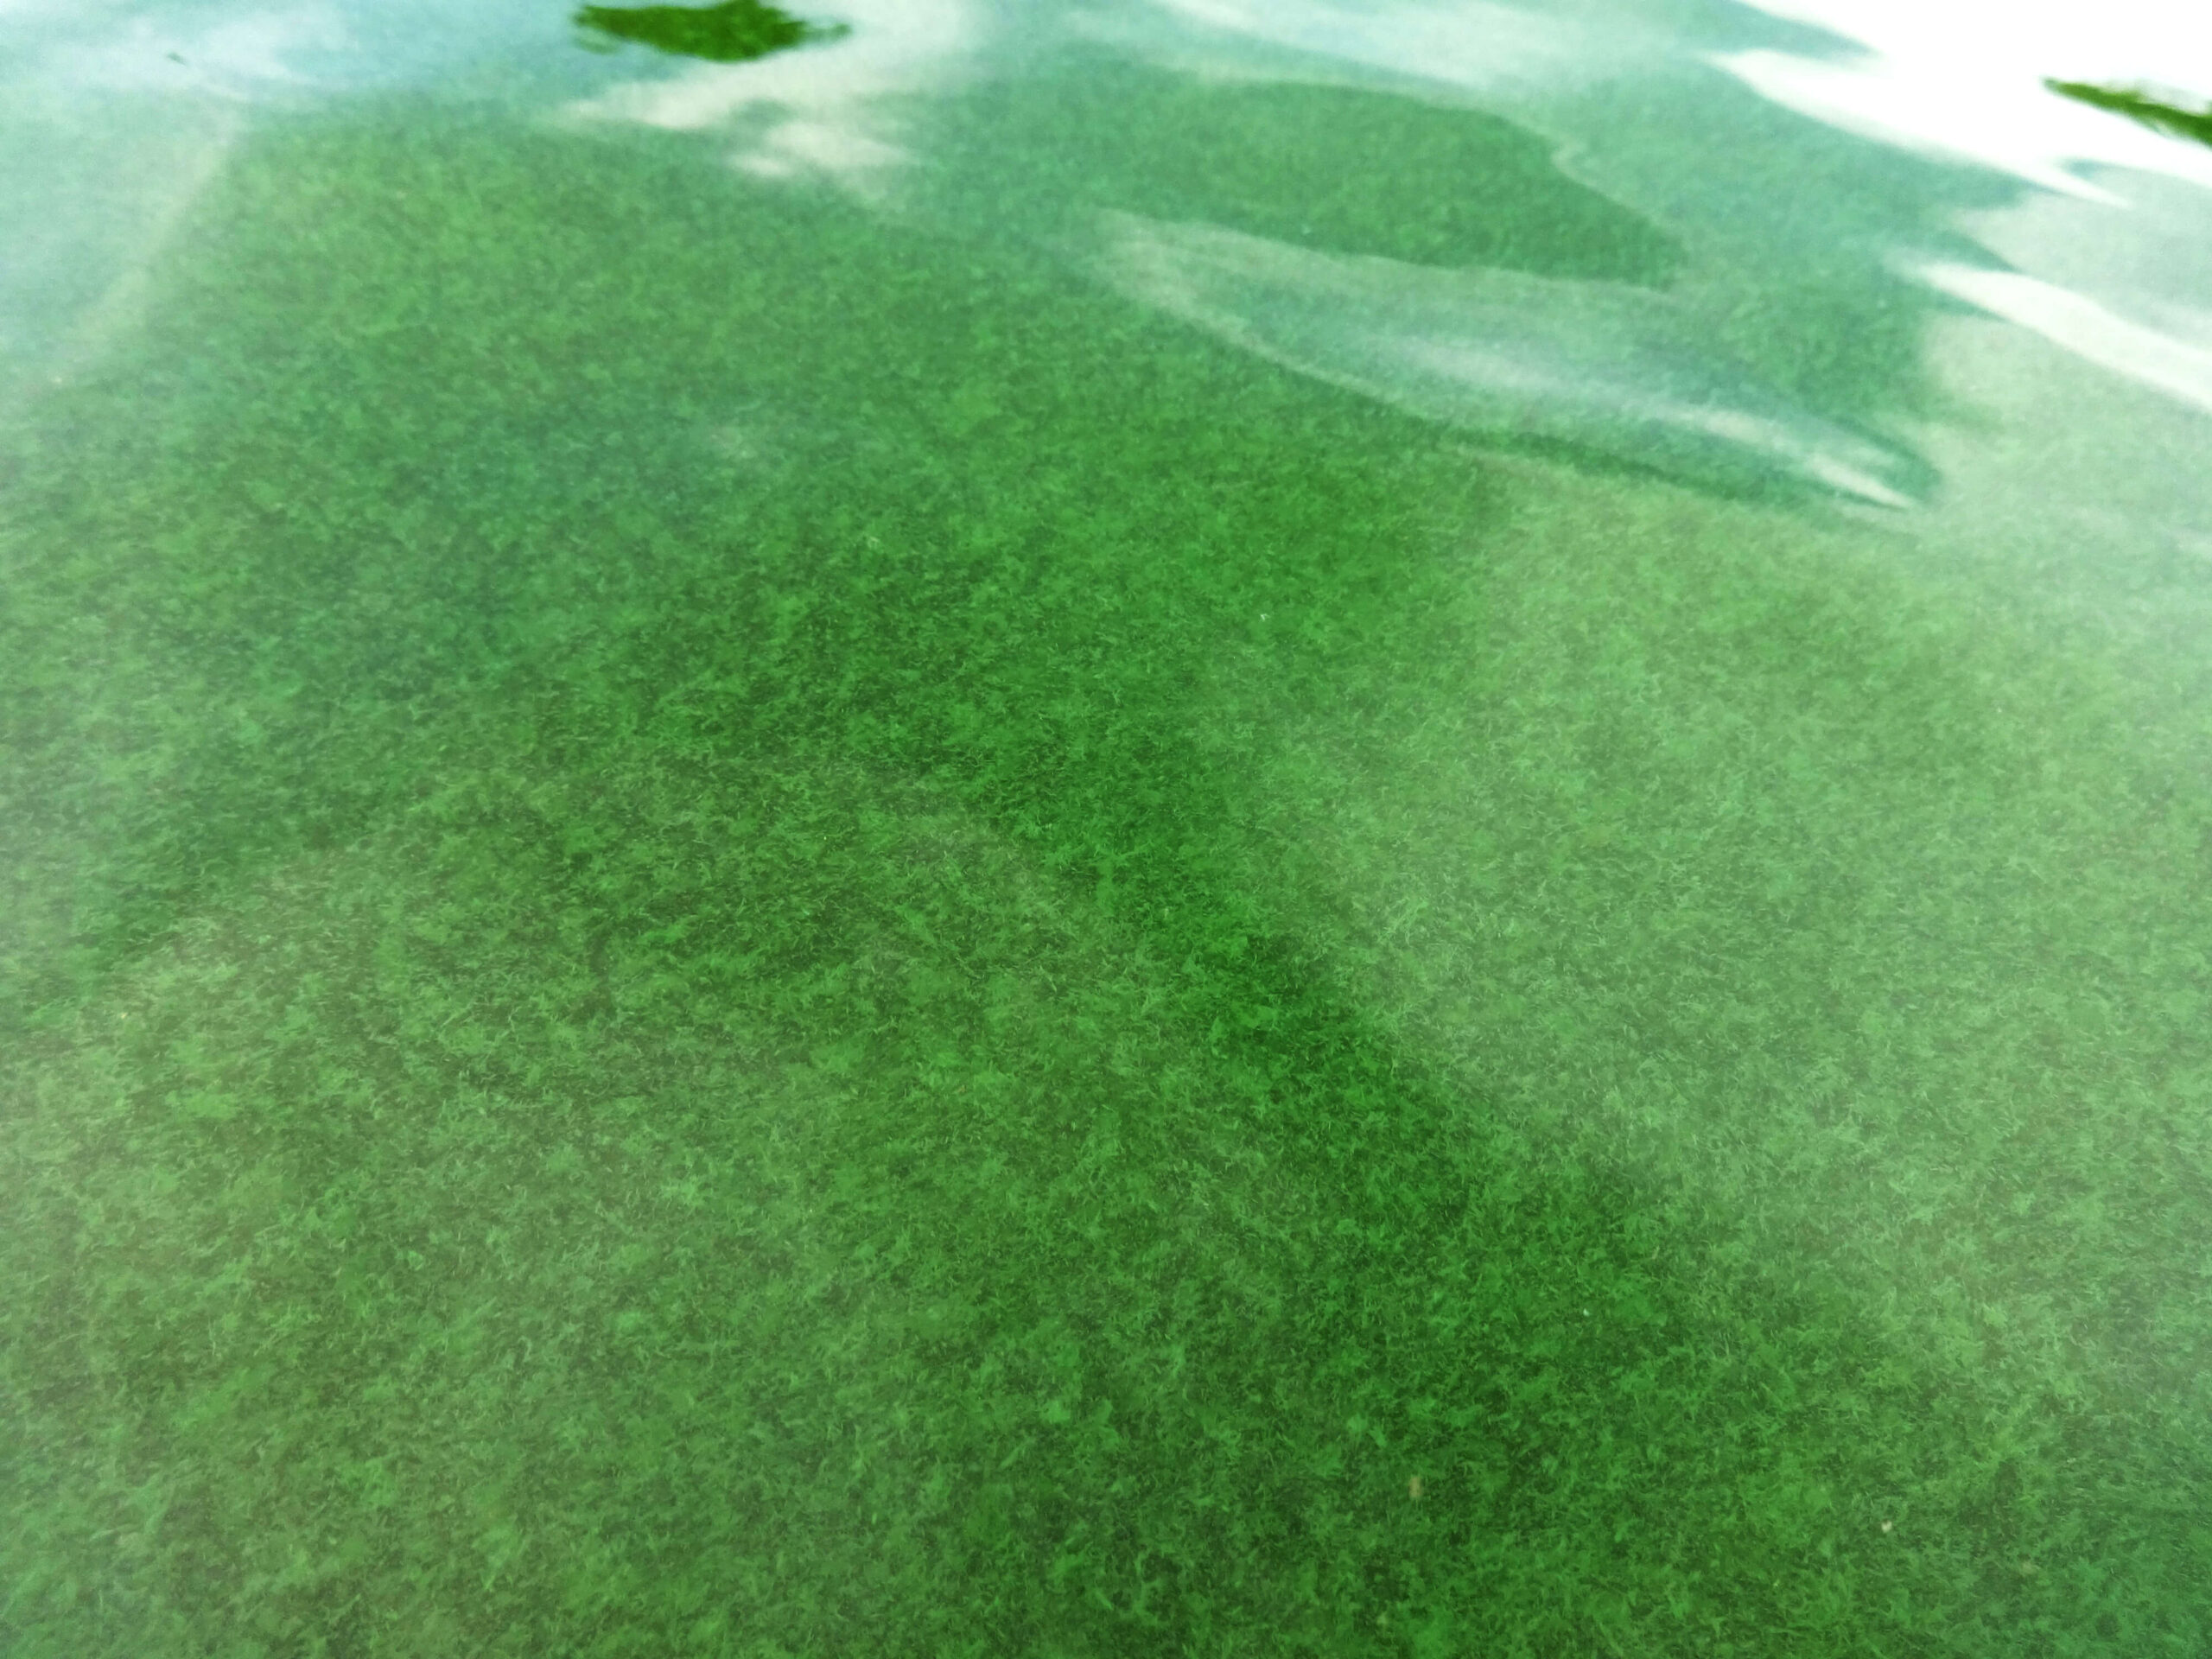 Prevent Algae with an Easy Back-to-Basics Program